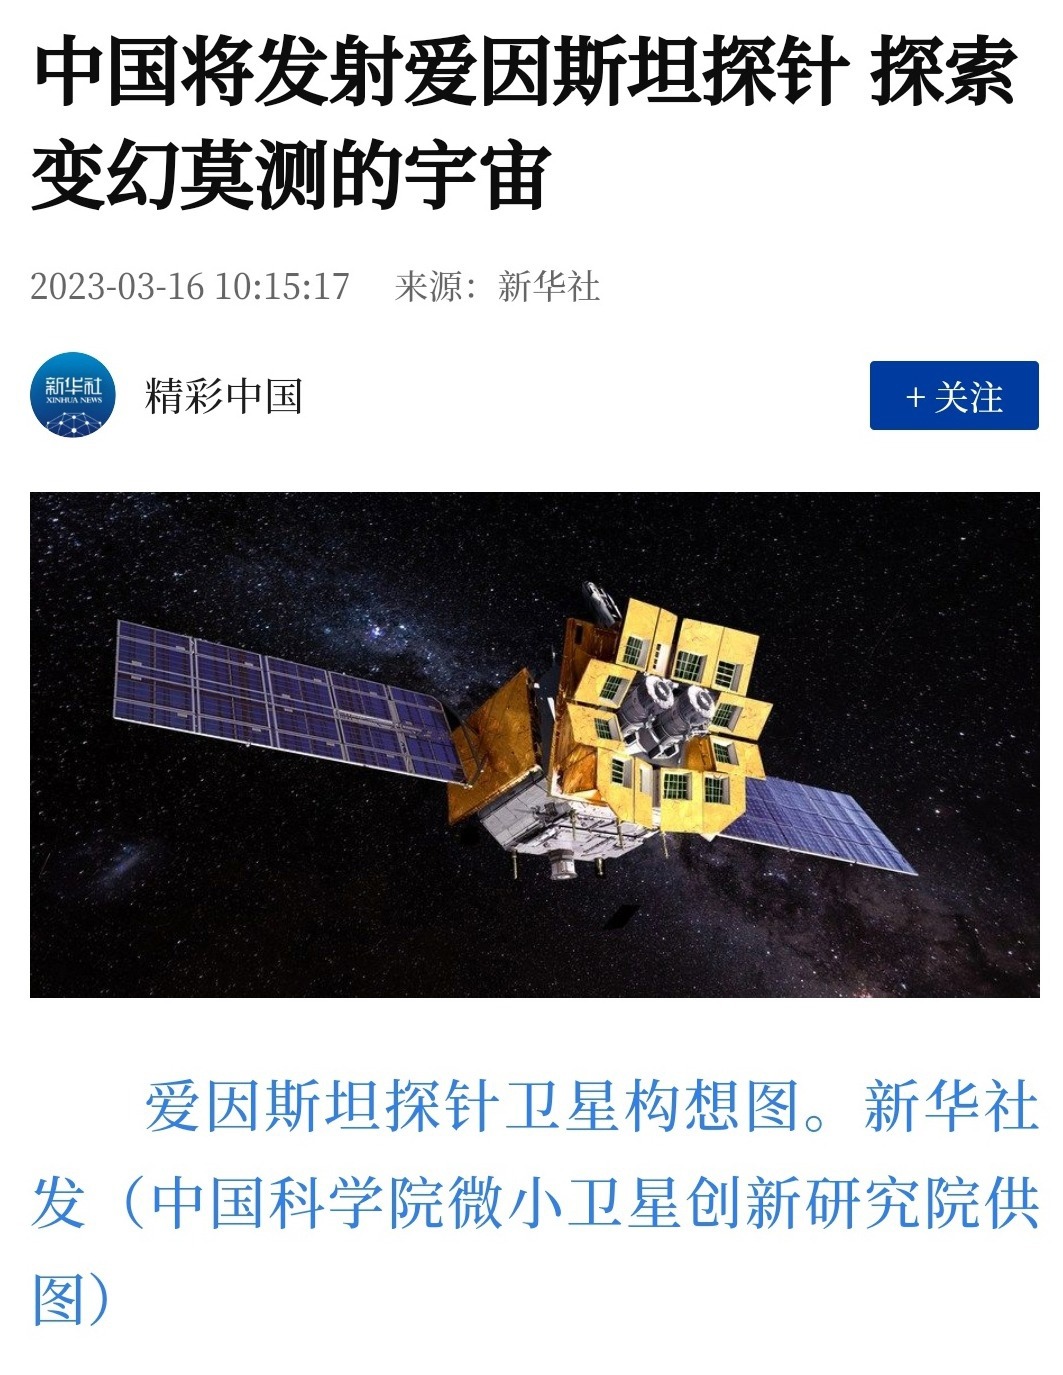 祝贺！我国成功发射爱因斯坦探针卫星 -天山网 - 新疆新闻门户